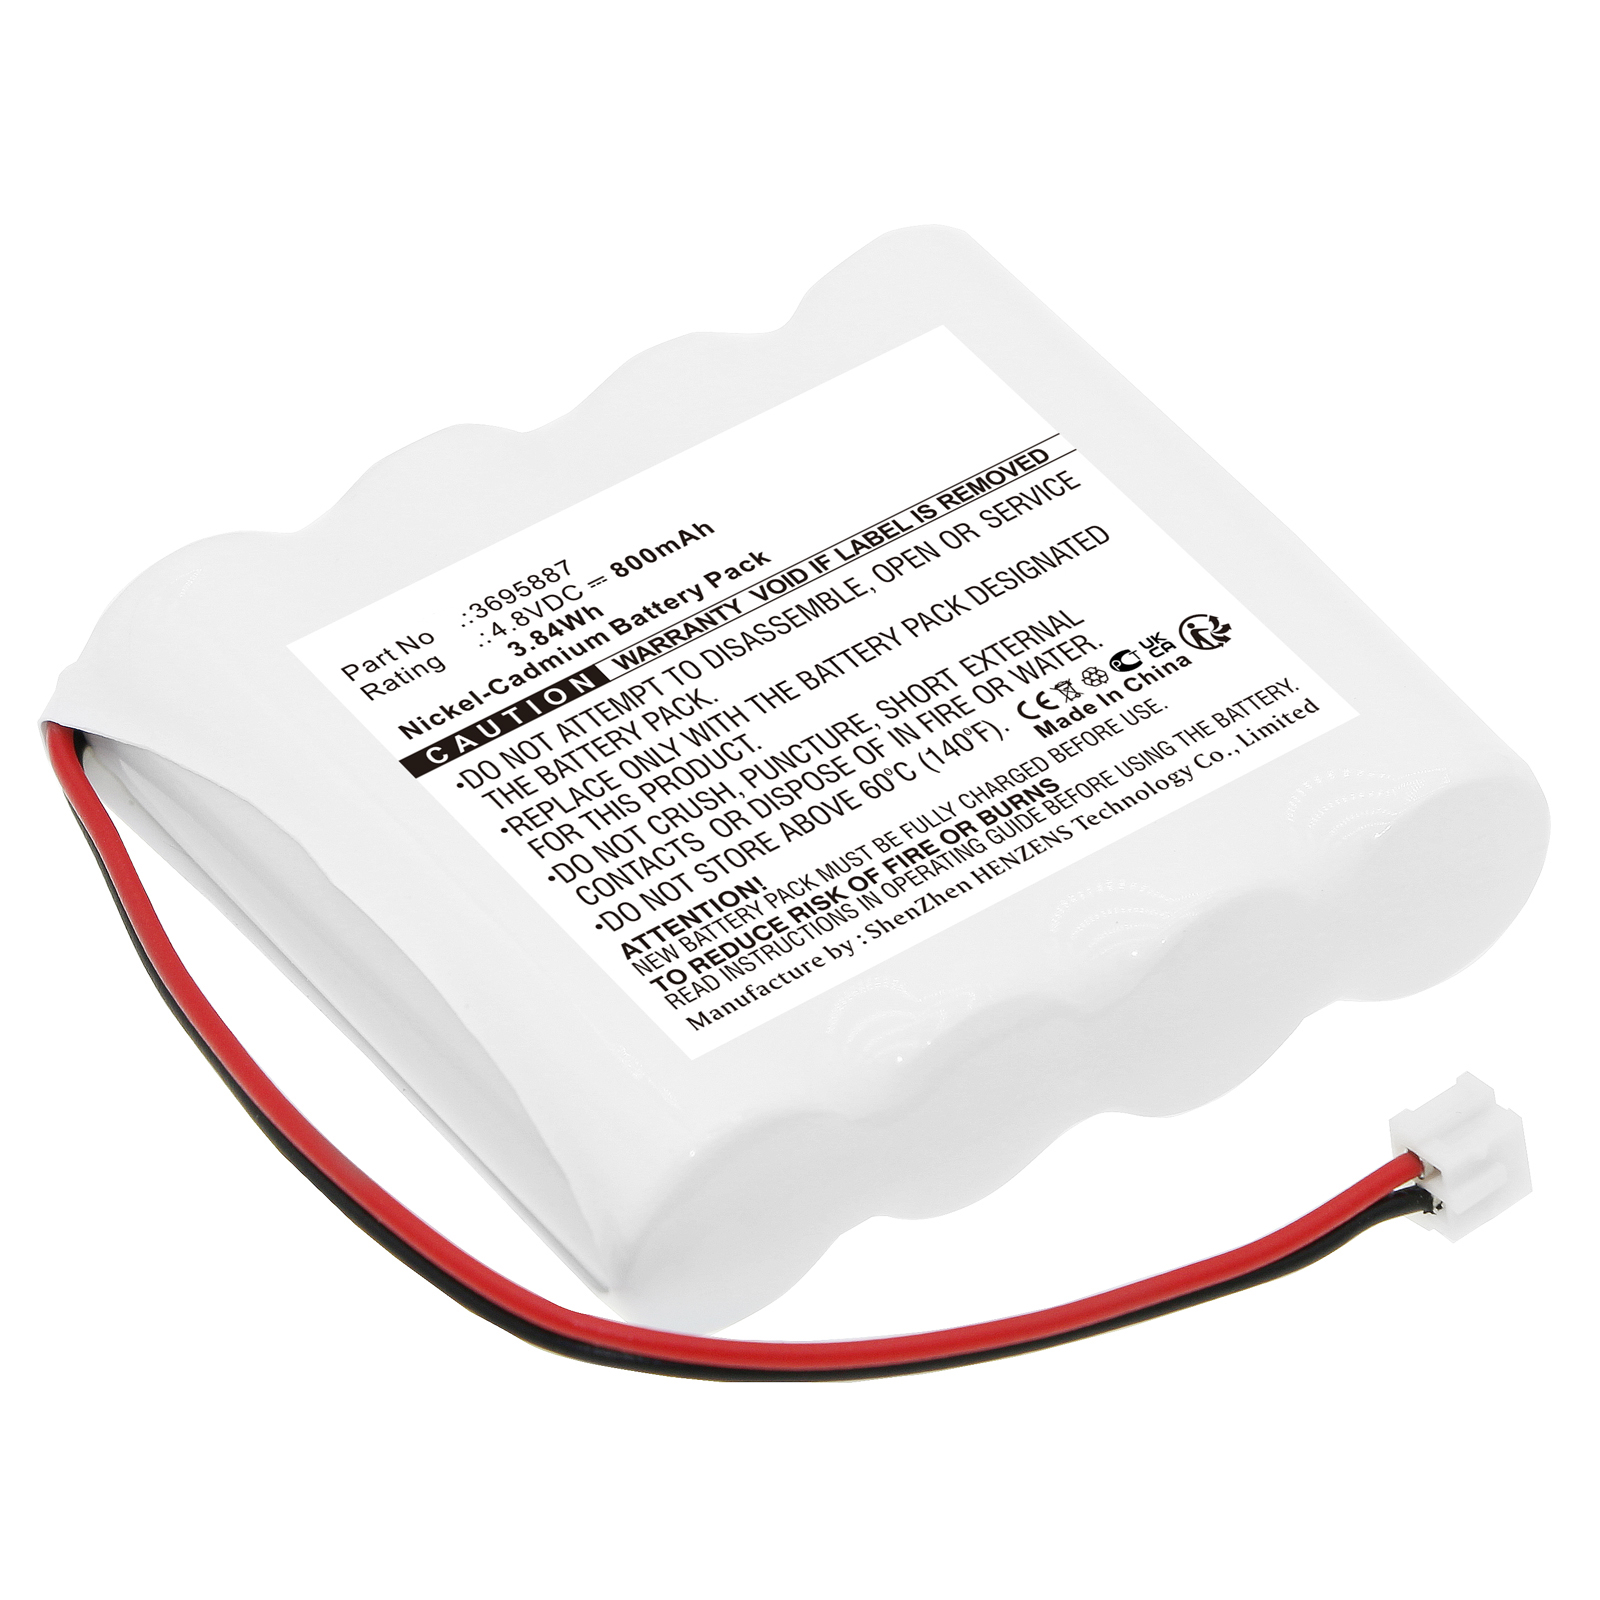 Synergy Digital Emergency Lighting Battery, Compatible with Indexa 3695887 Emergency Lighting Battery (Ni-CD, 4.8V, 800mAh)